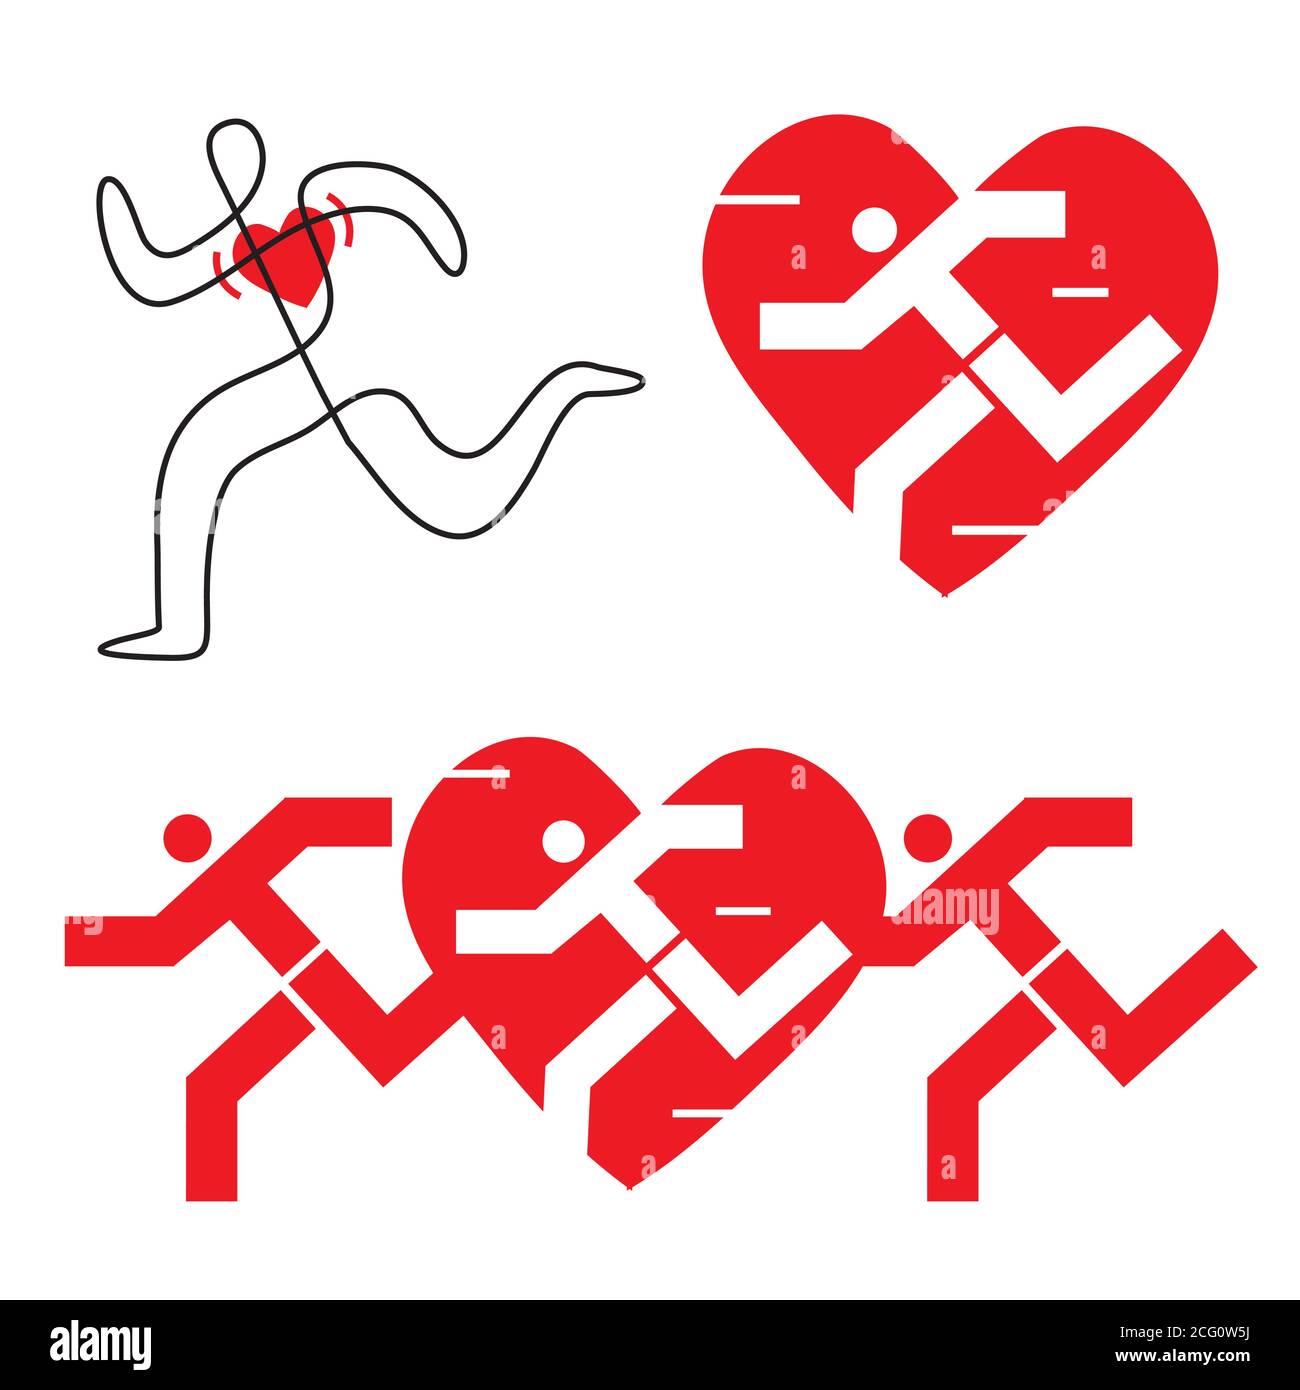 Laufen für ein gesundes Herz. Drei Illustrationen stilisierter Läufer mit Herz-Ikone. Vektor verfügbar. Stock Vektor